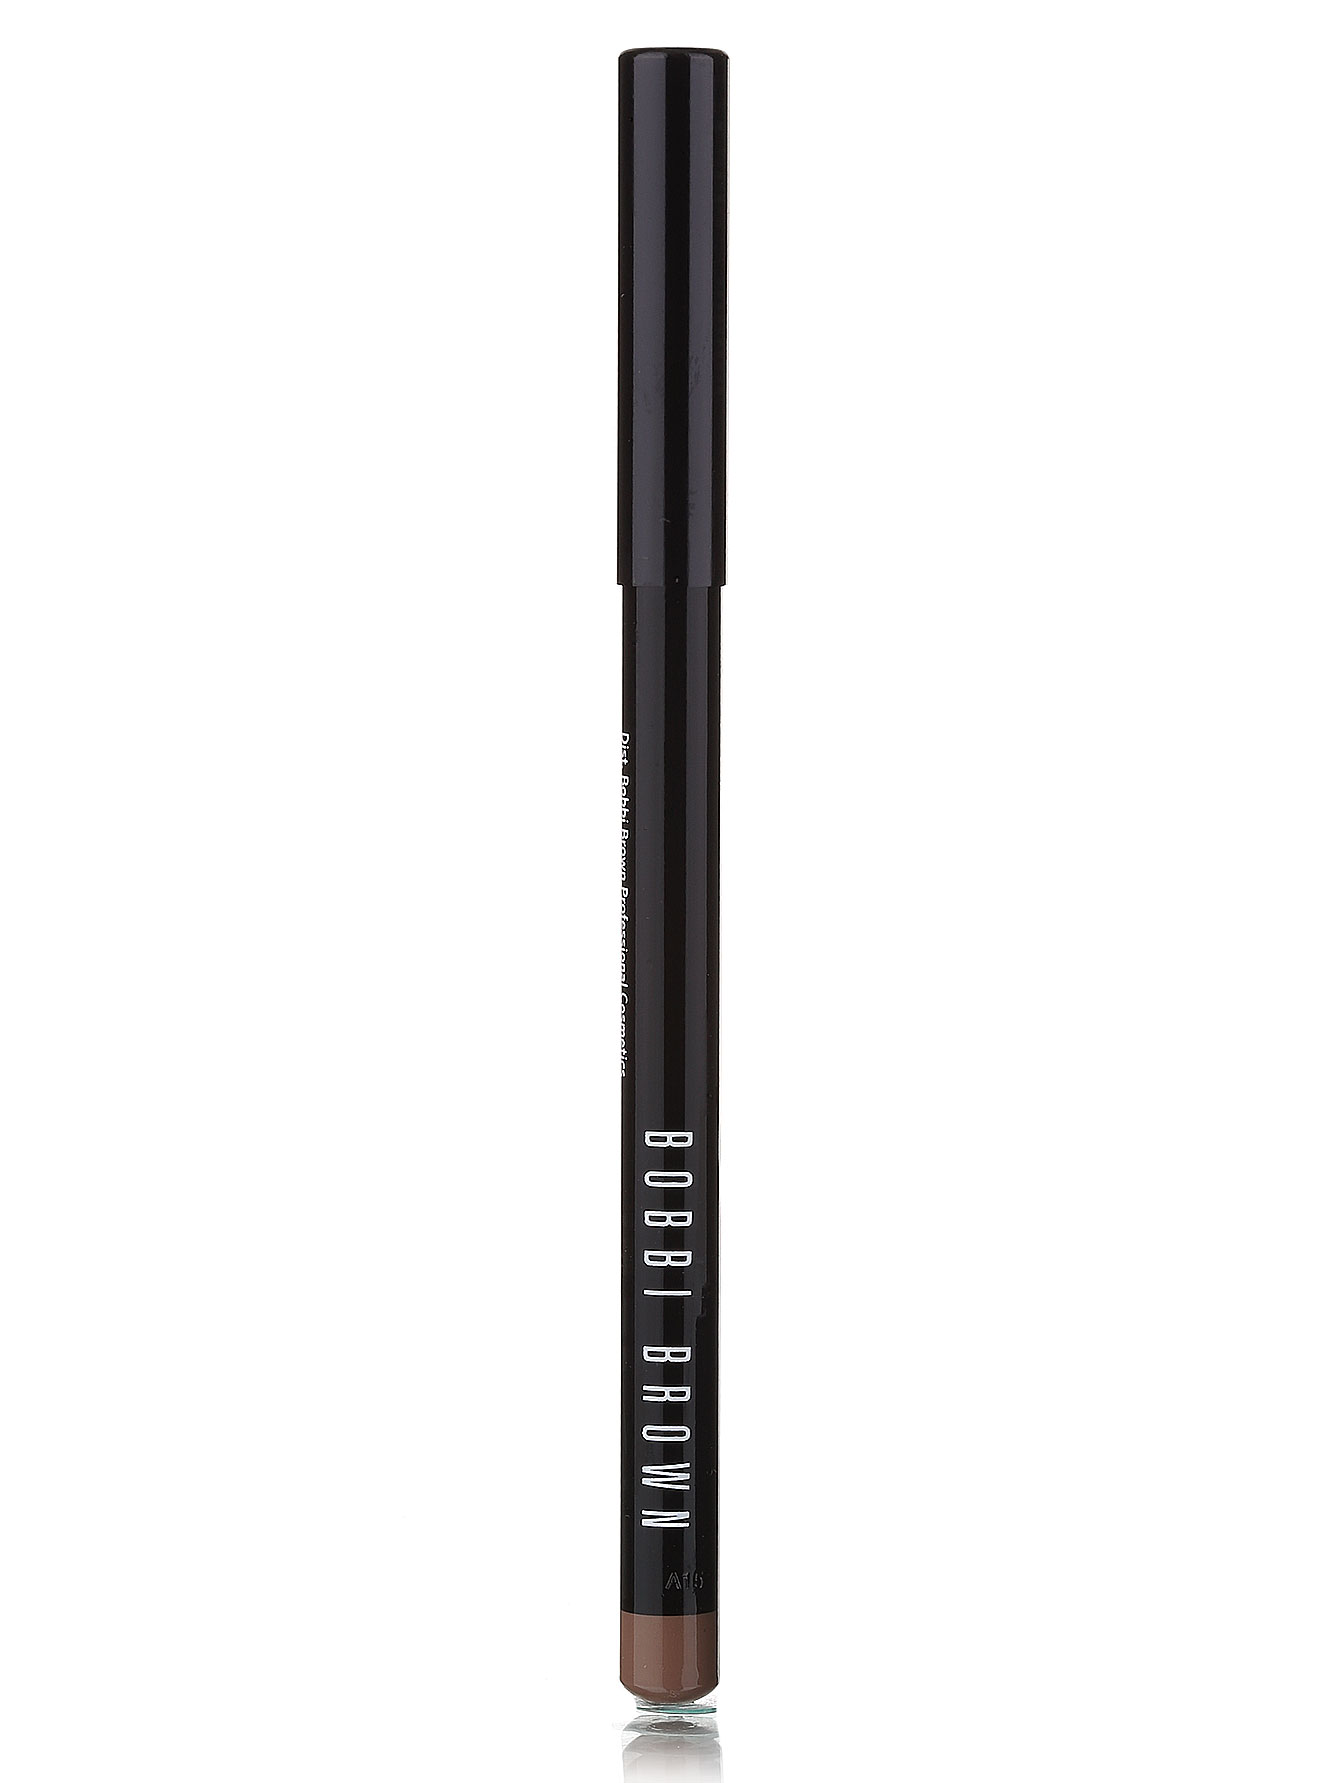  Карандаш для бровей - Grey, Brow Pencil - Модель Верх-Низ